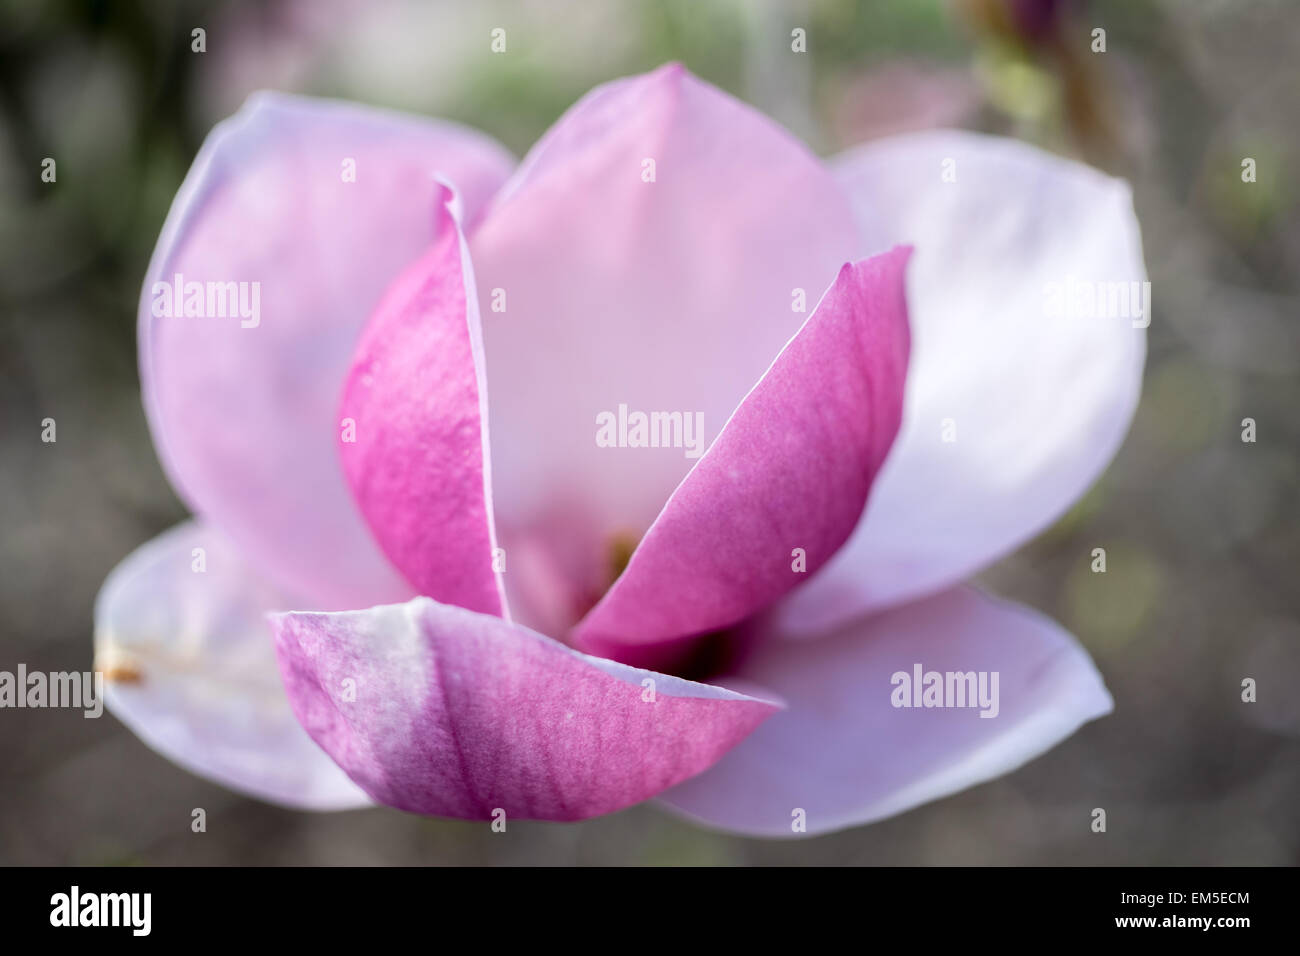 Magnolia soulangiana lennei fiore rosa close up Foto Stock